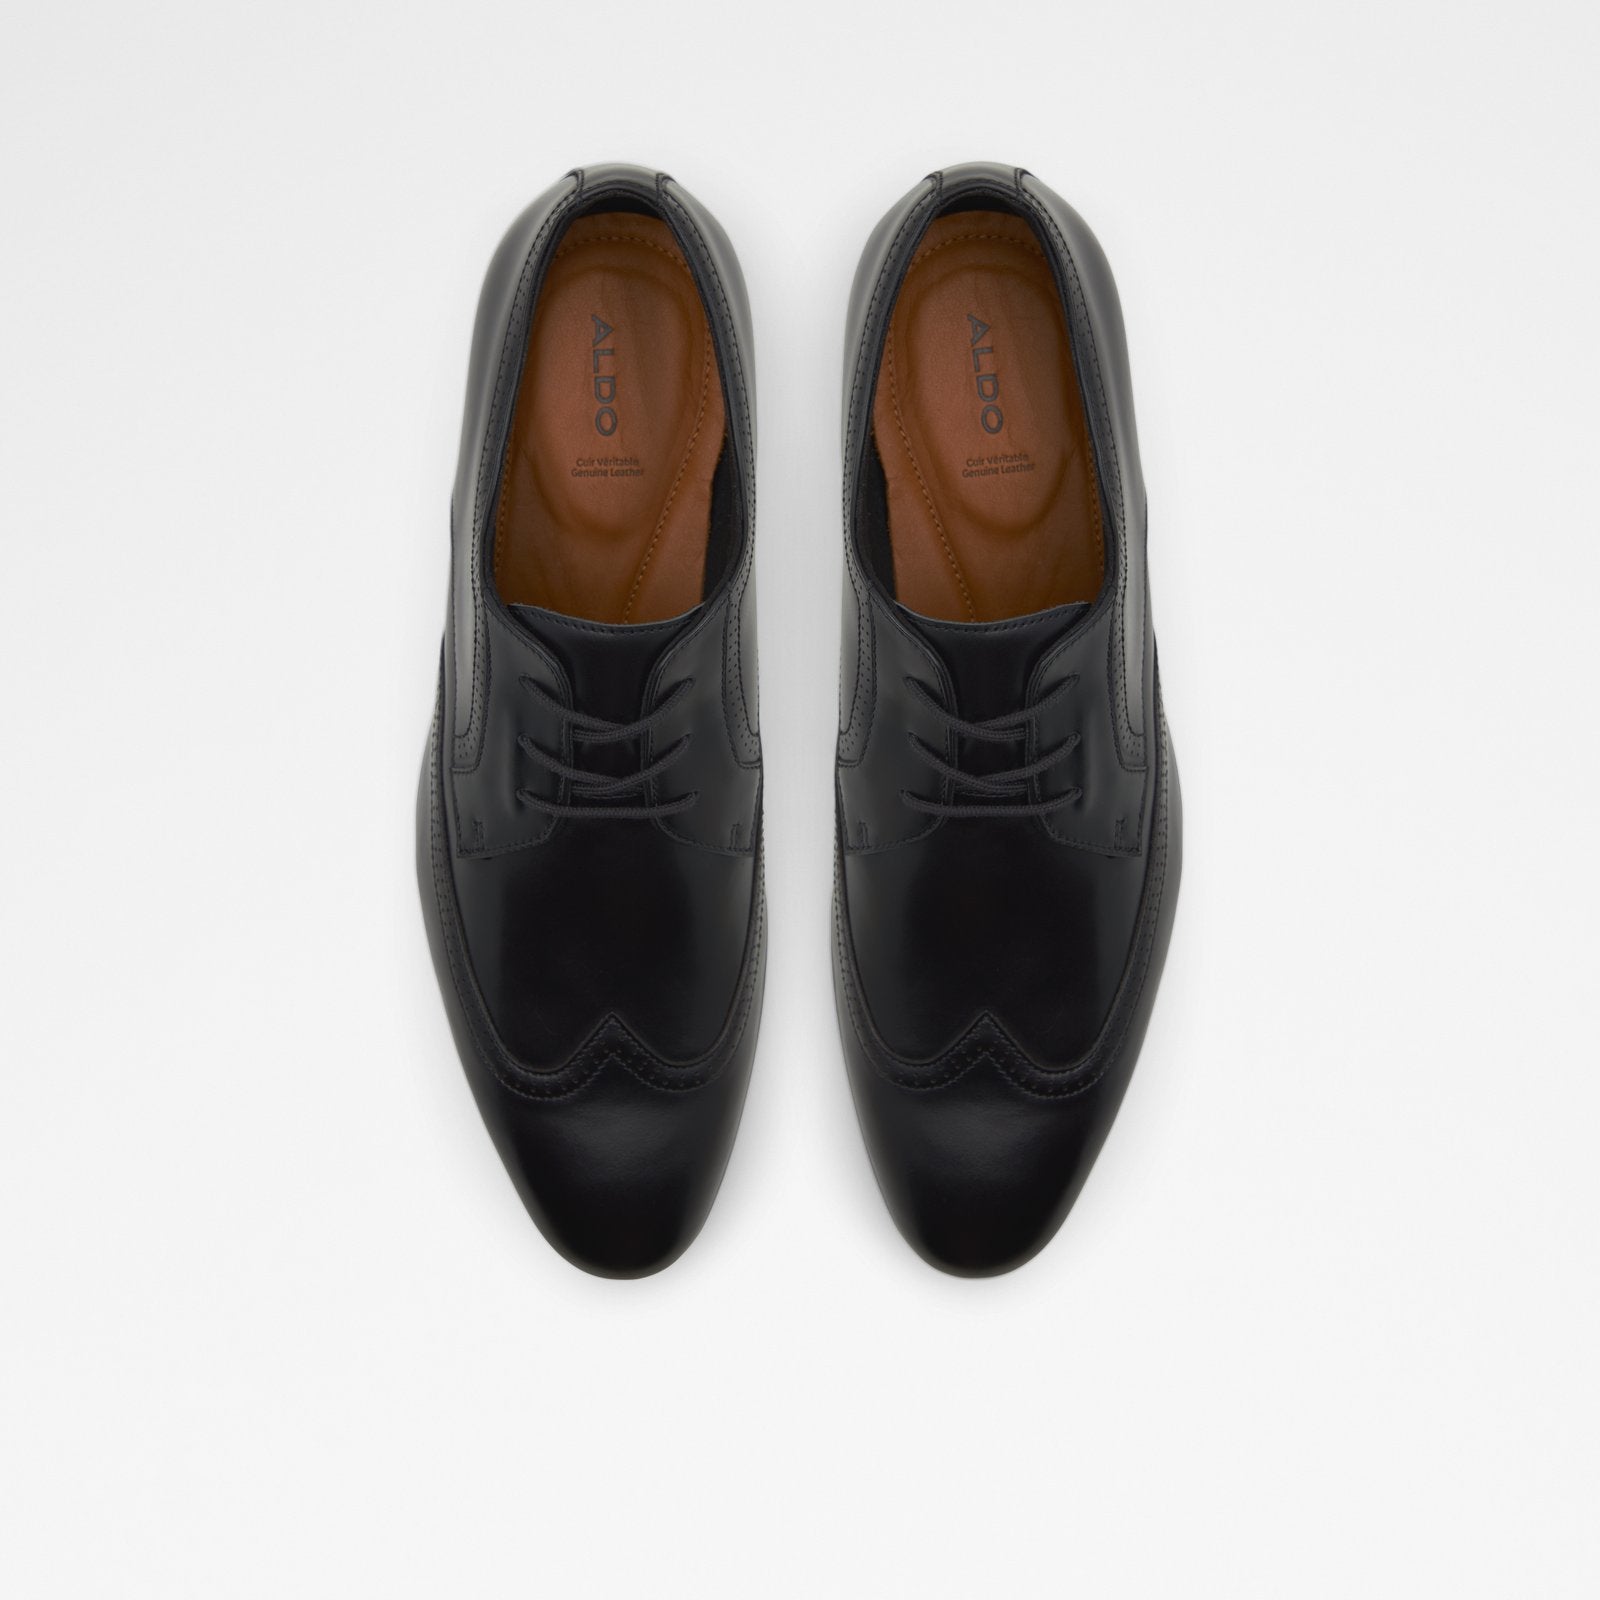 Dumond Men Shoes - Black - ALDO KSA